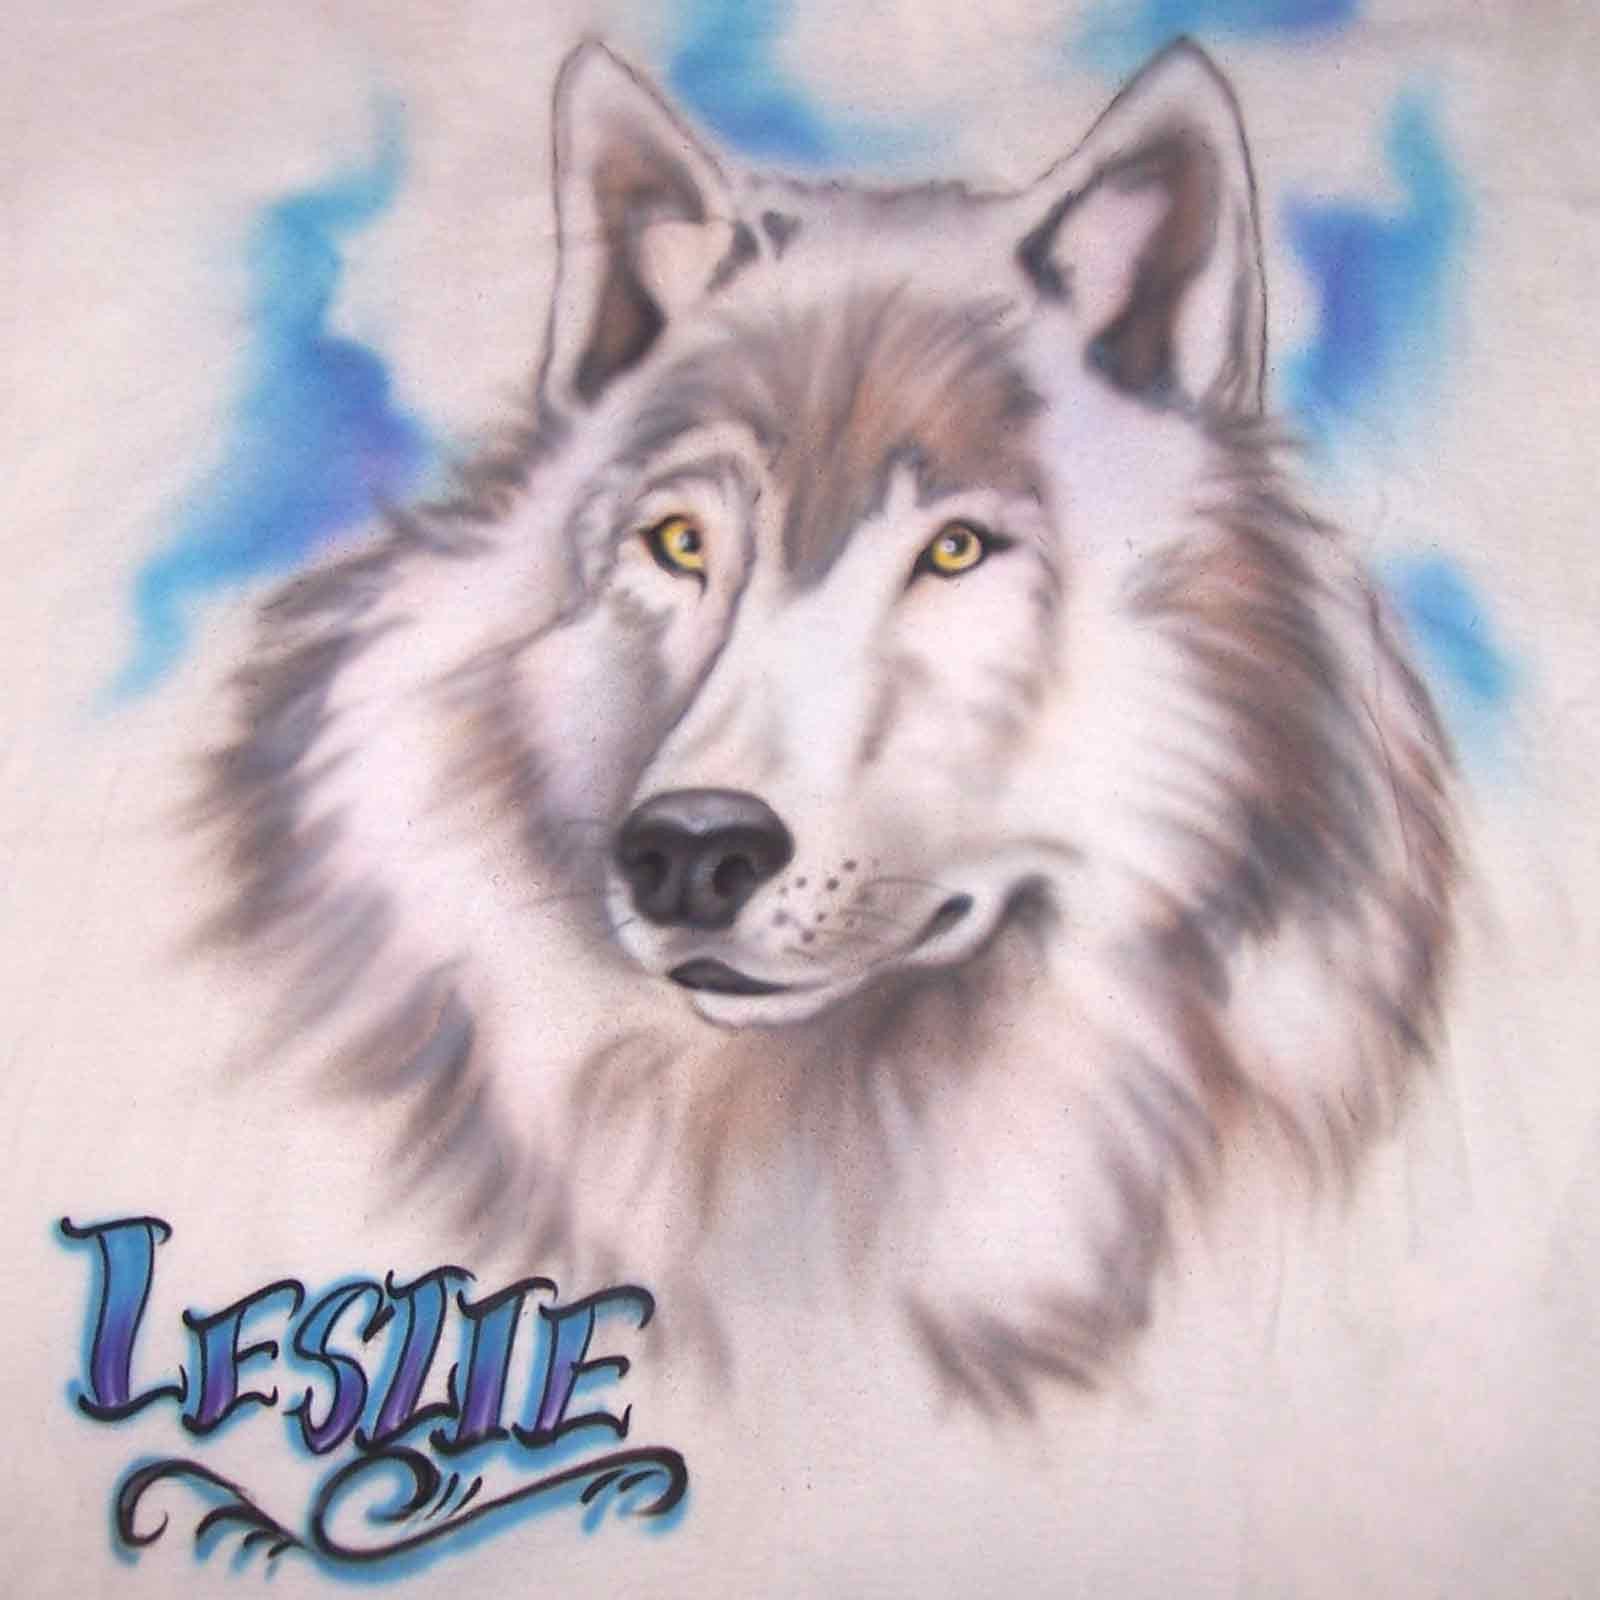 Custom Wolf airbrush t-shirt